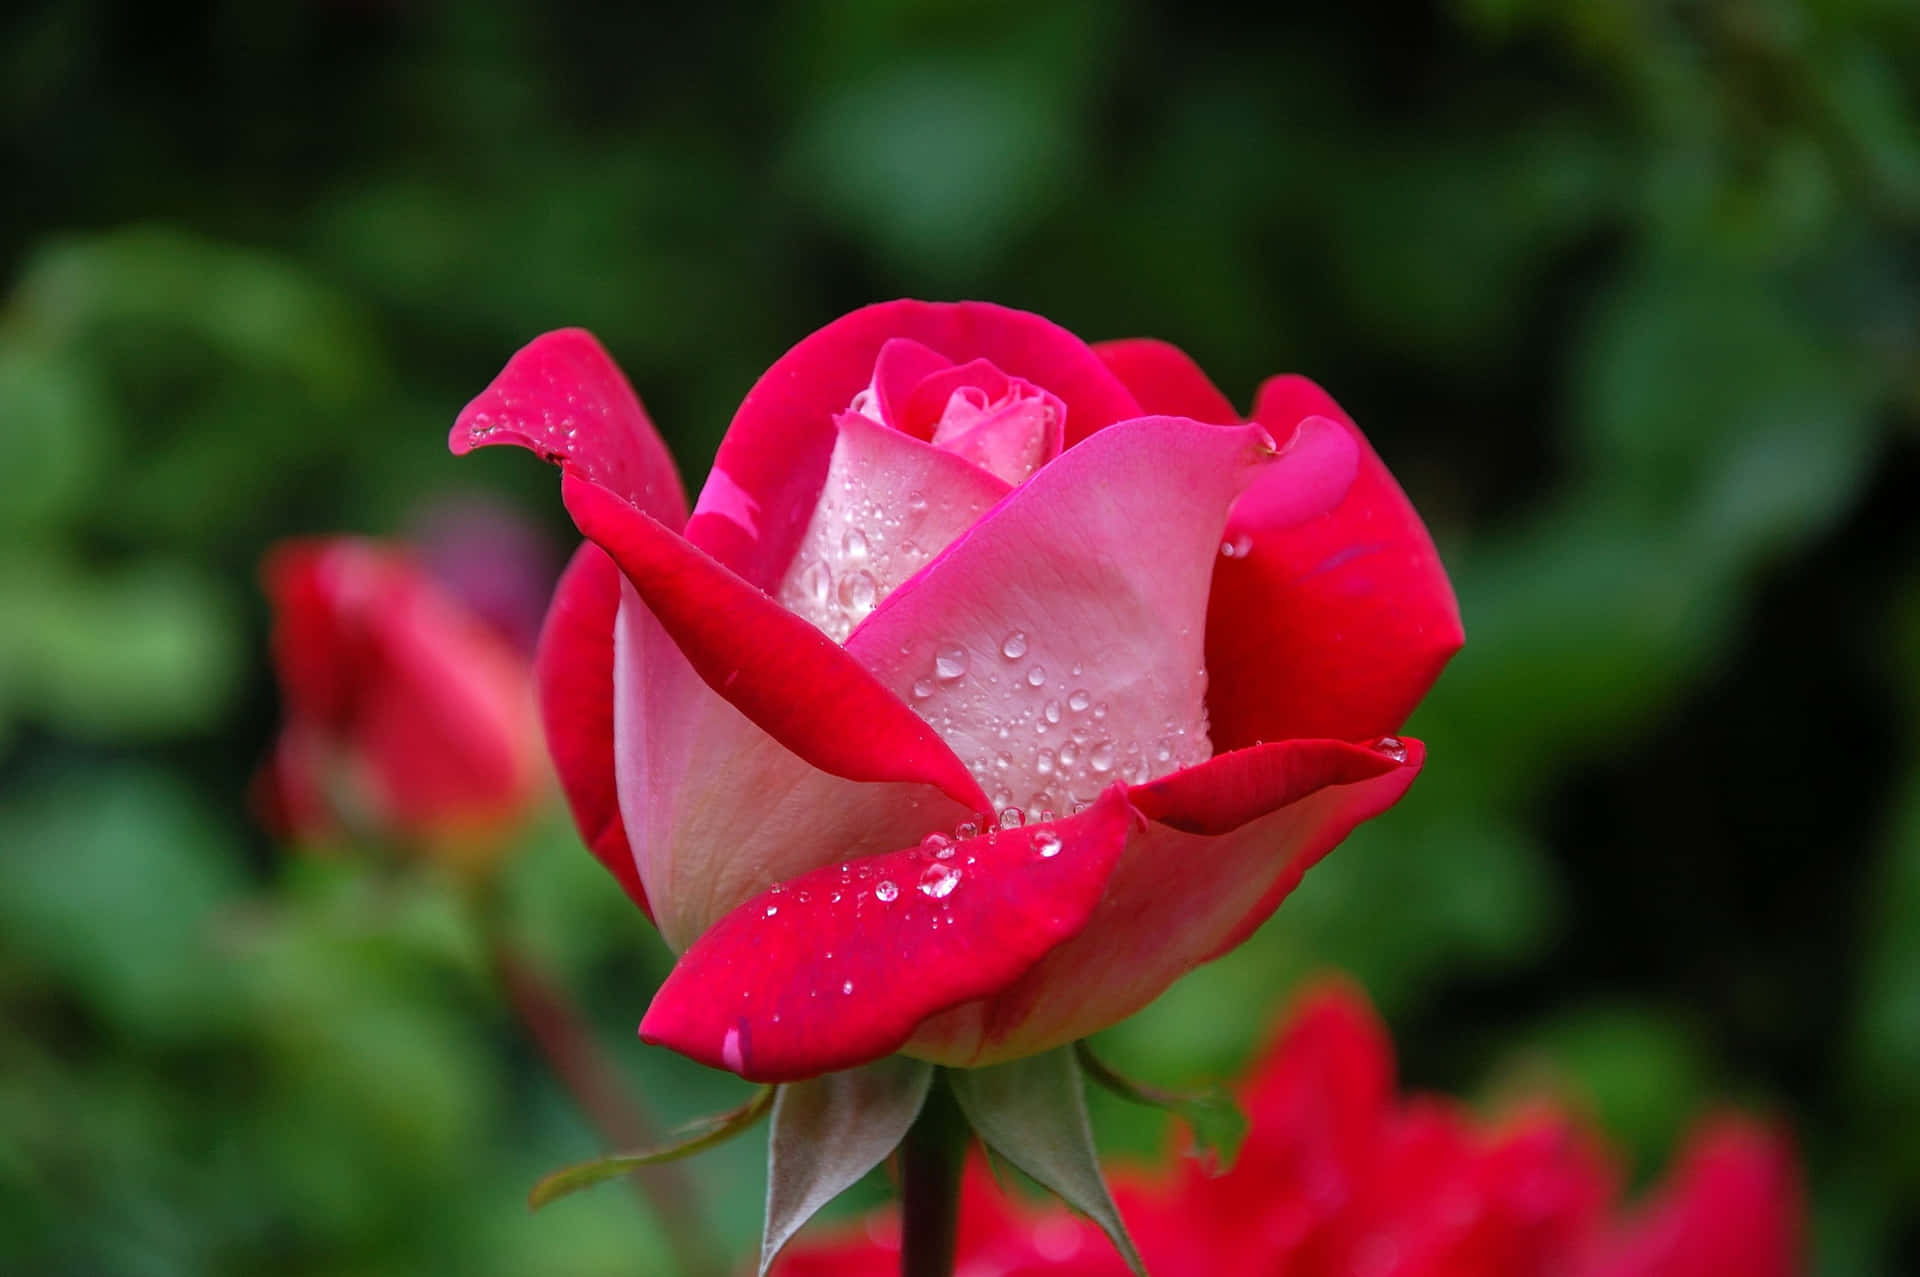 Vis din kærlighed denne Valentinsdag med smukke roser Wallpaper